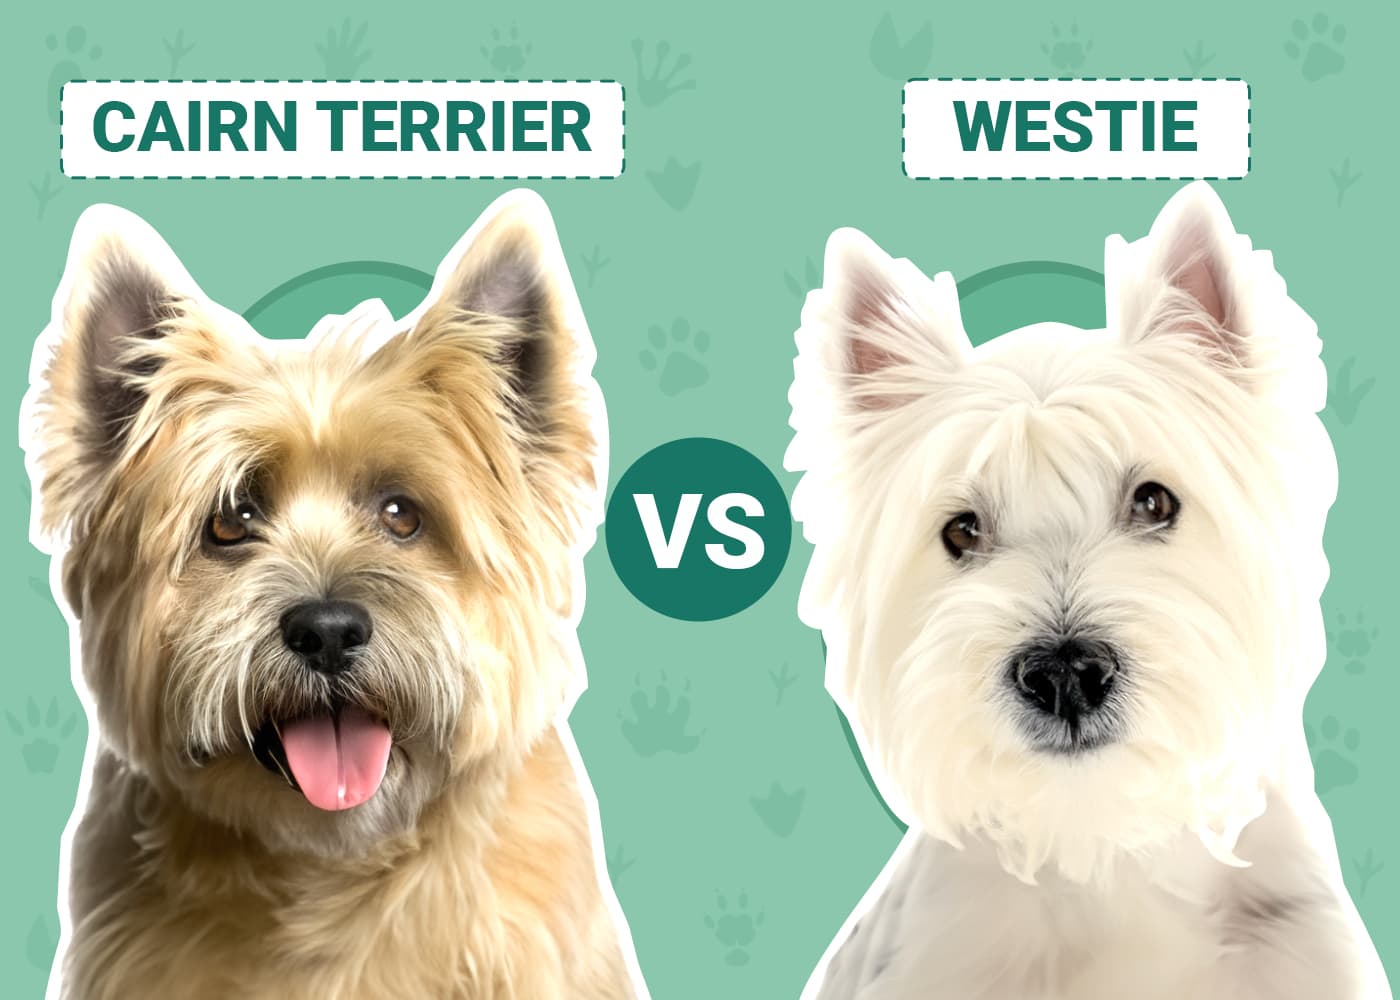 Cairn Terrier vs Westie